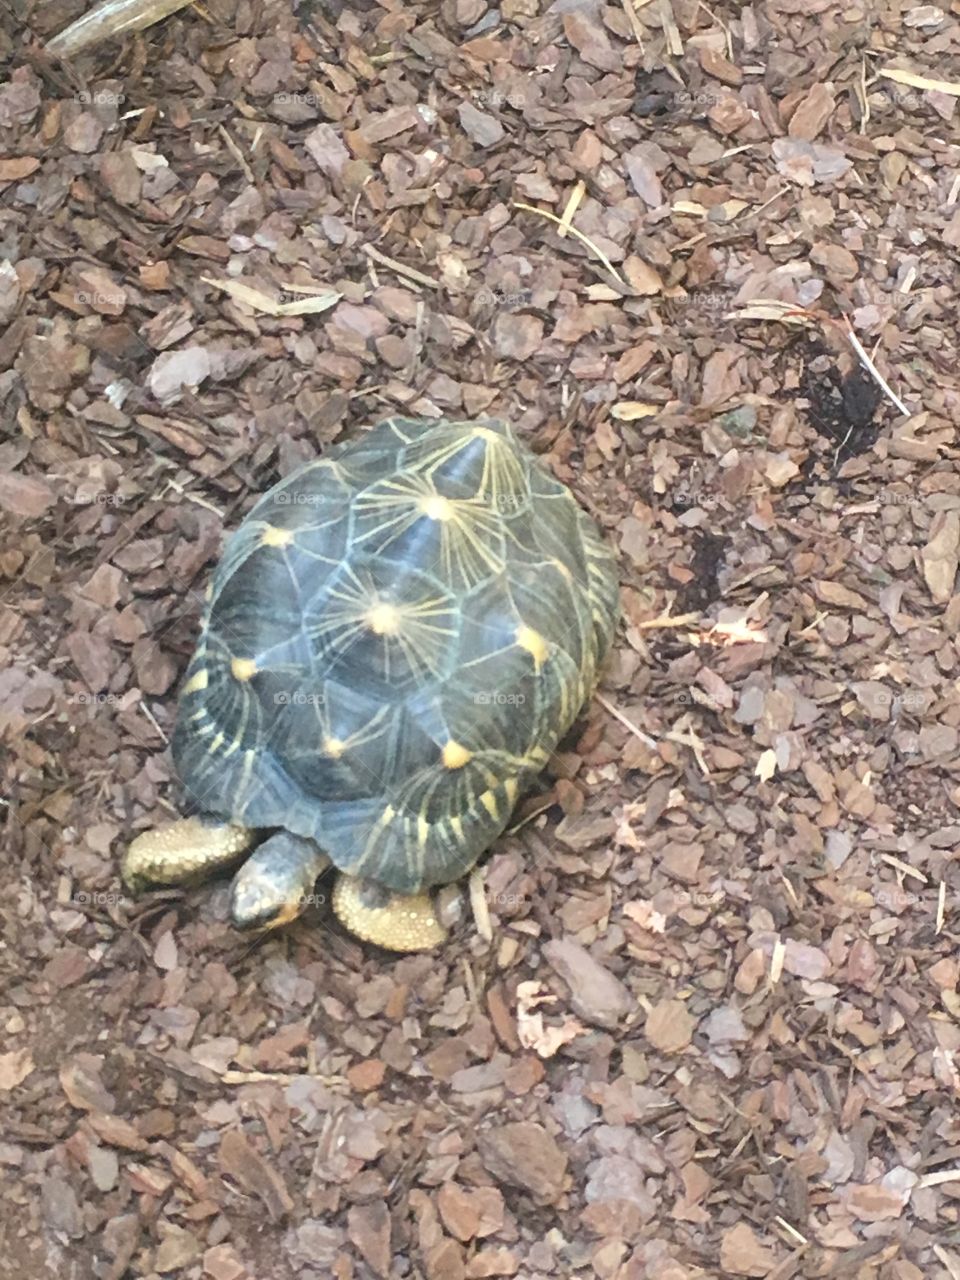 Star tortoise among bark 